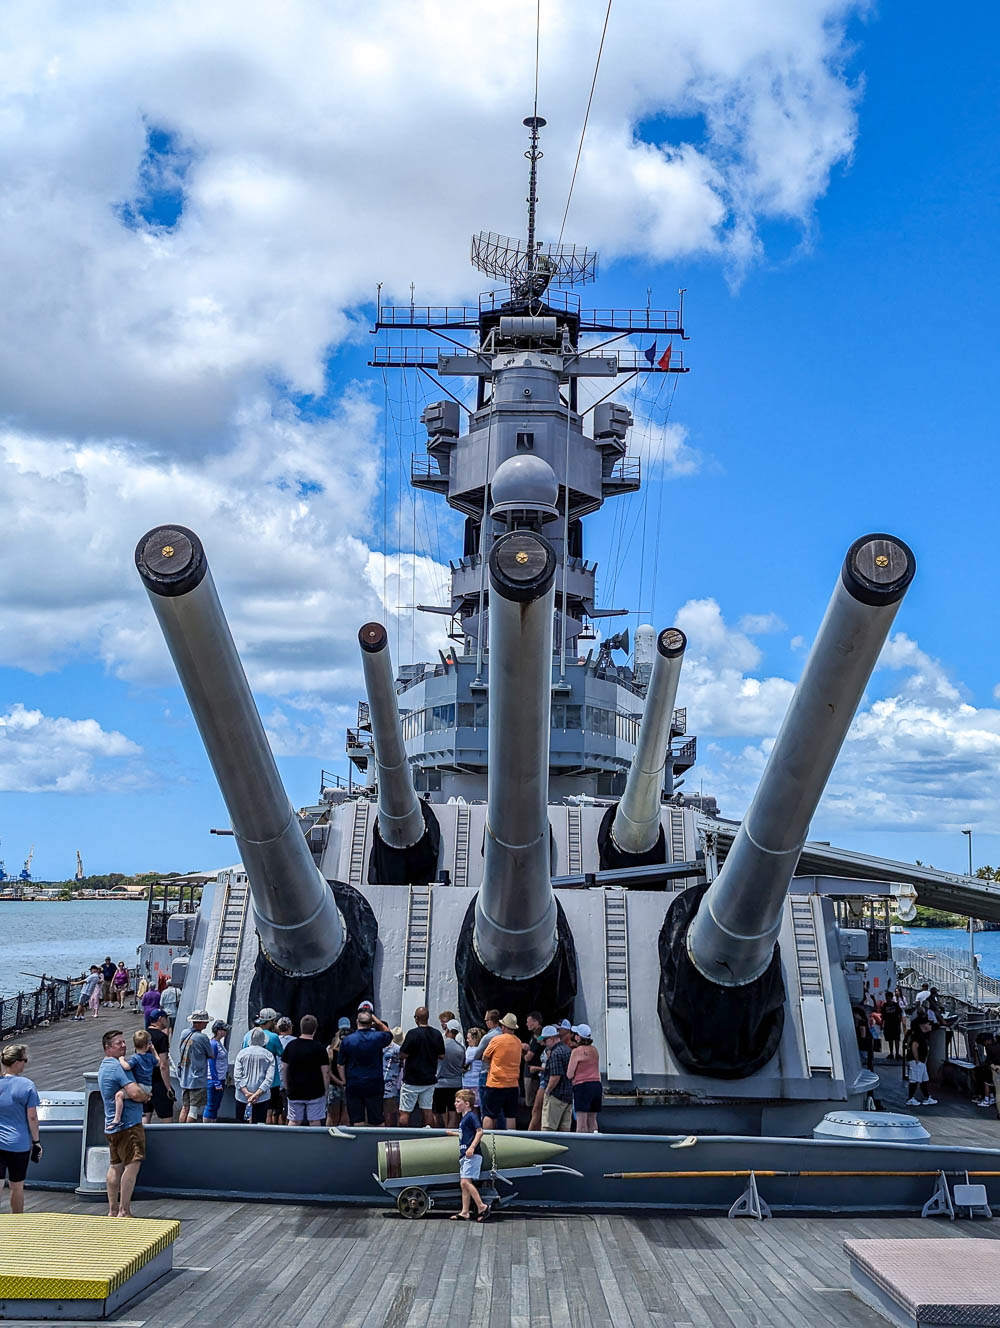 front view of a battleship under large guns